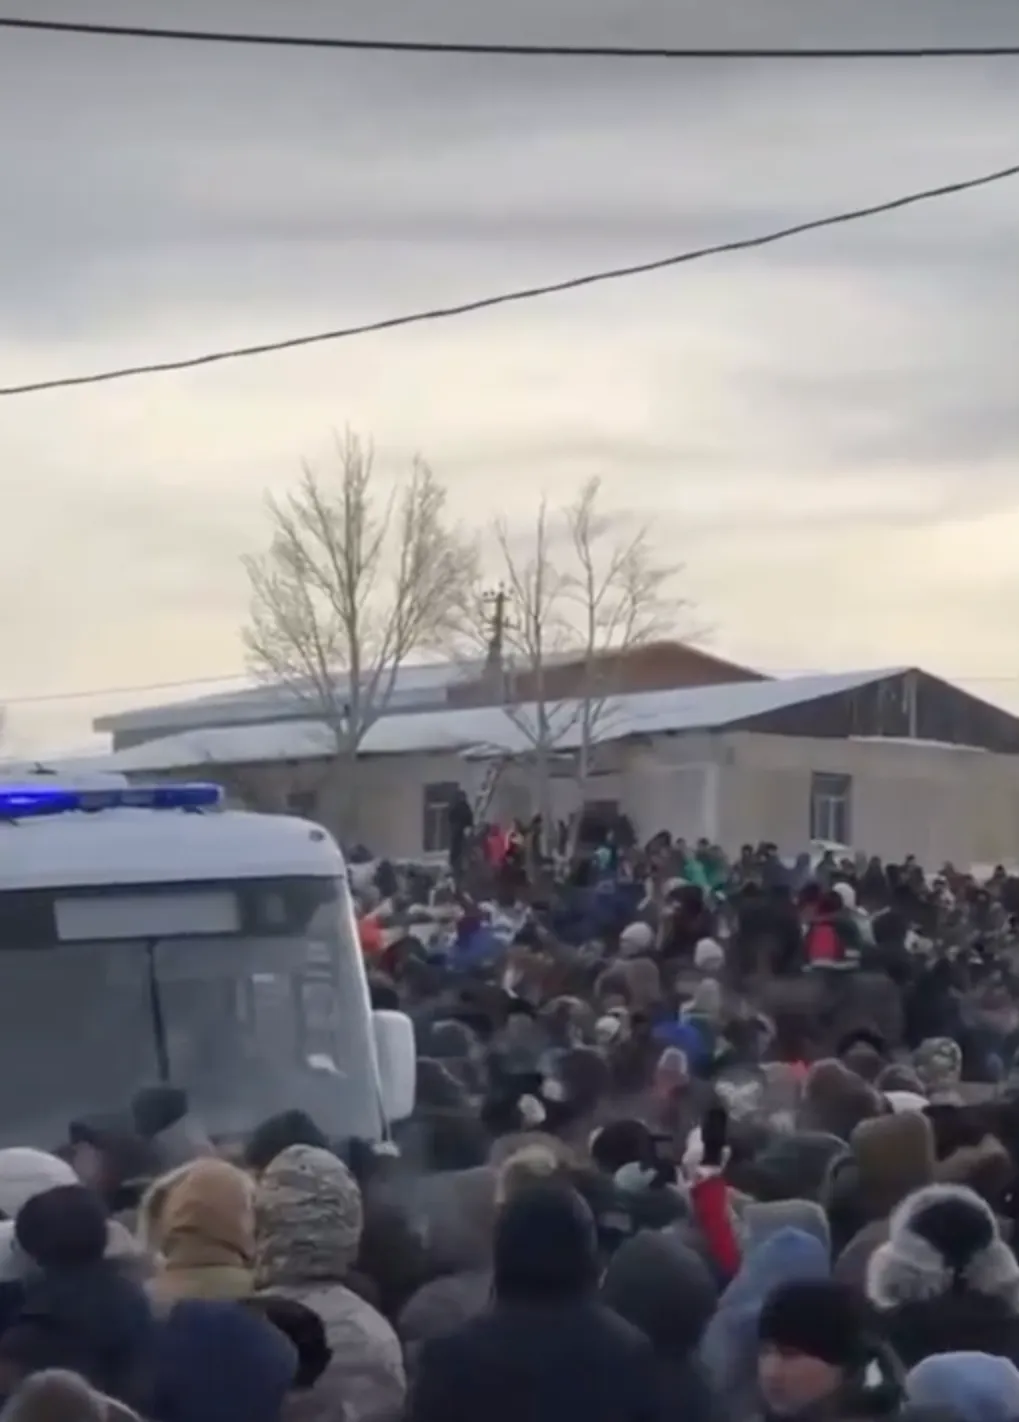 Протести в Башкортостані